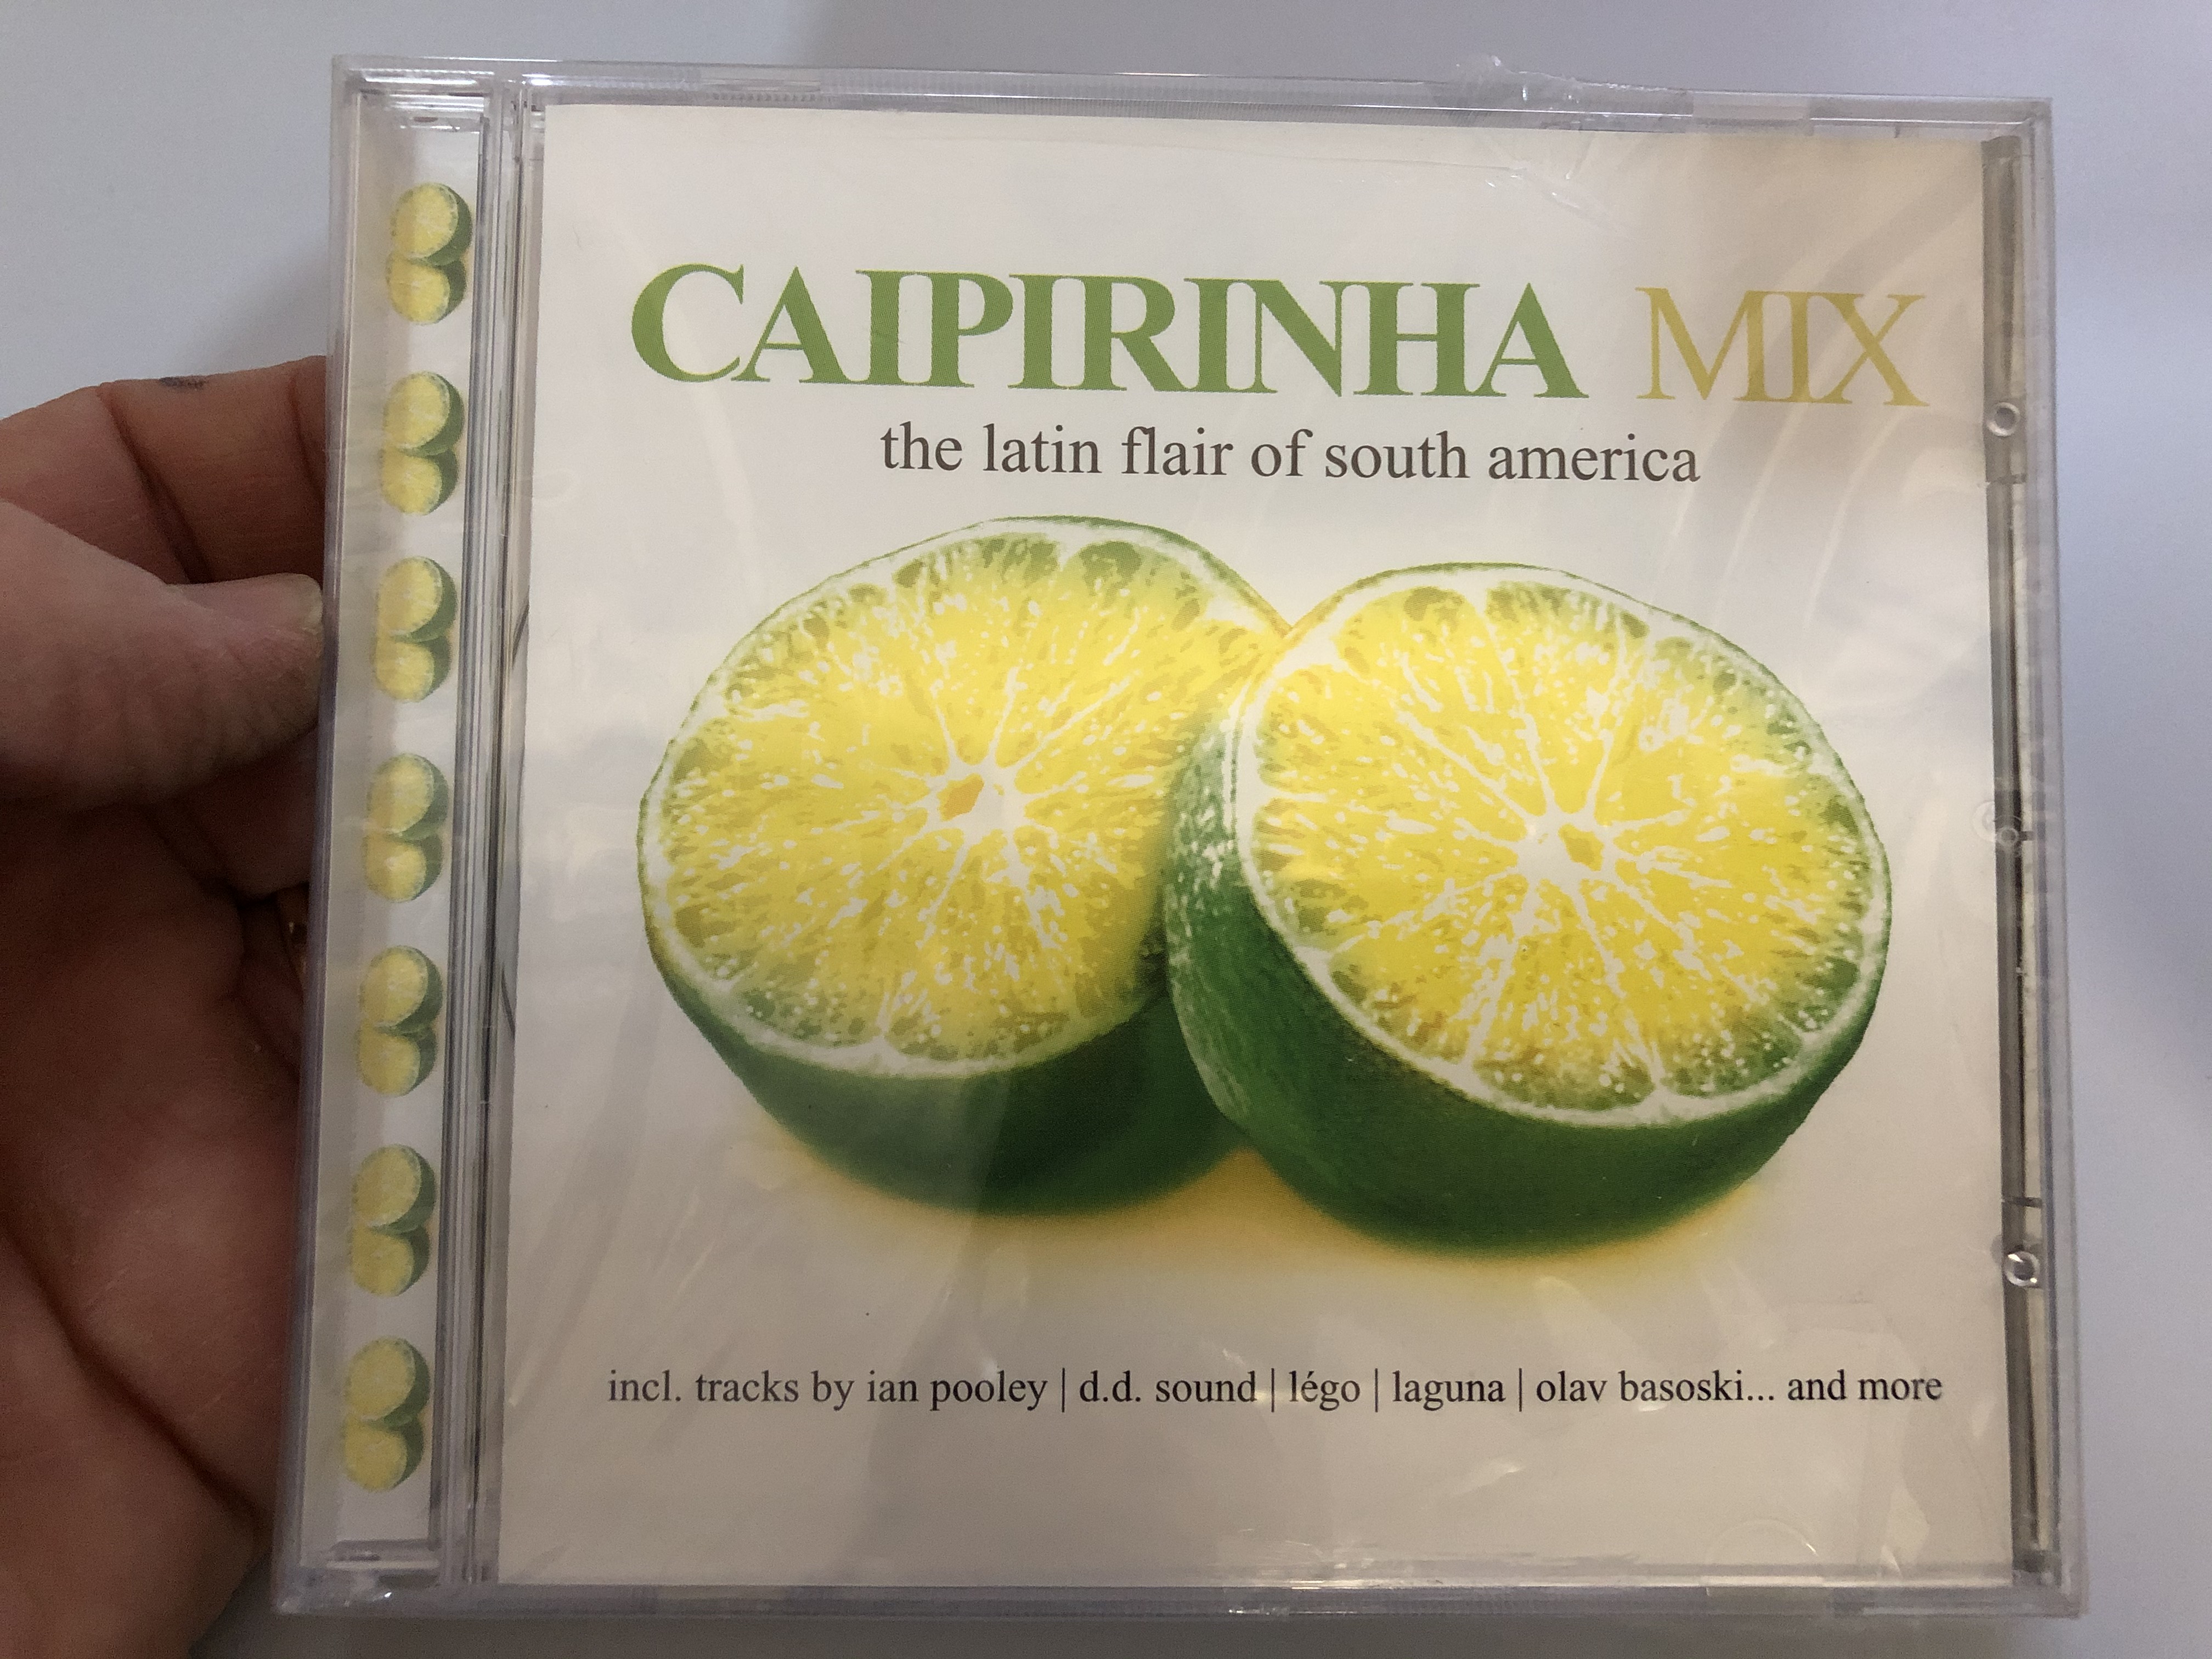 caipirinha-mix-the-latin-flair-of-south-america-incl.-tracks-by-ian-pooley-d.d.-sound-lego-laguna-olav-basoski...-and-more-zyx-music-audio-cd-2001-zyx-55231-2-1-.jpg